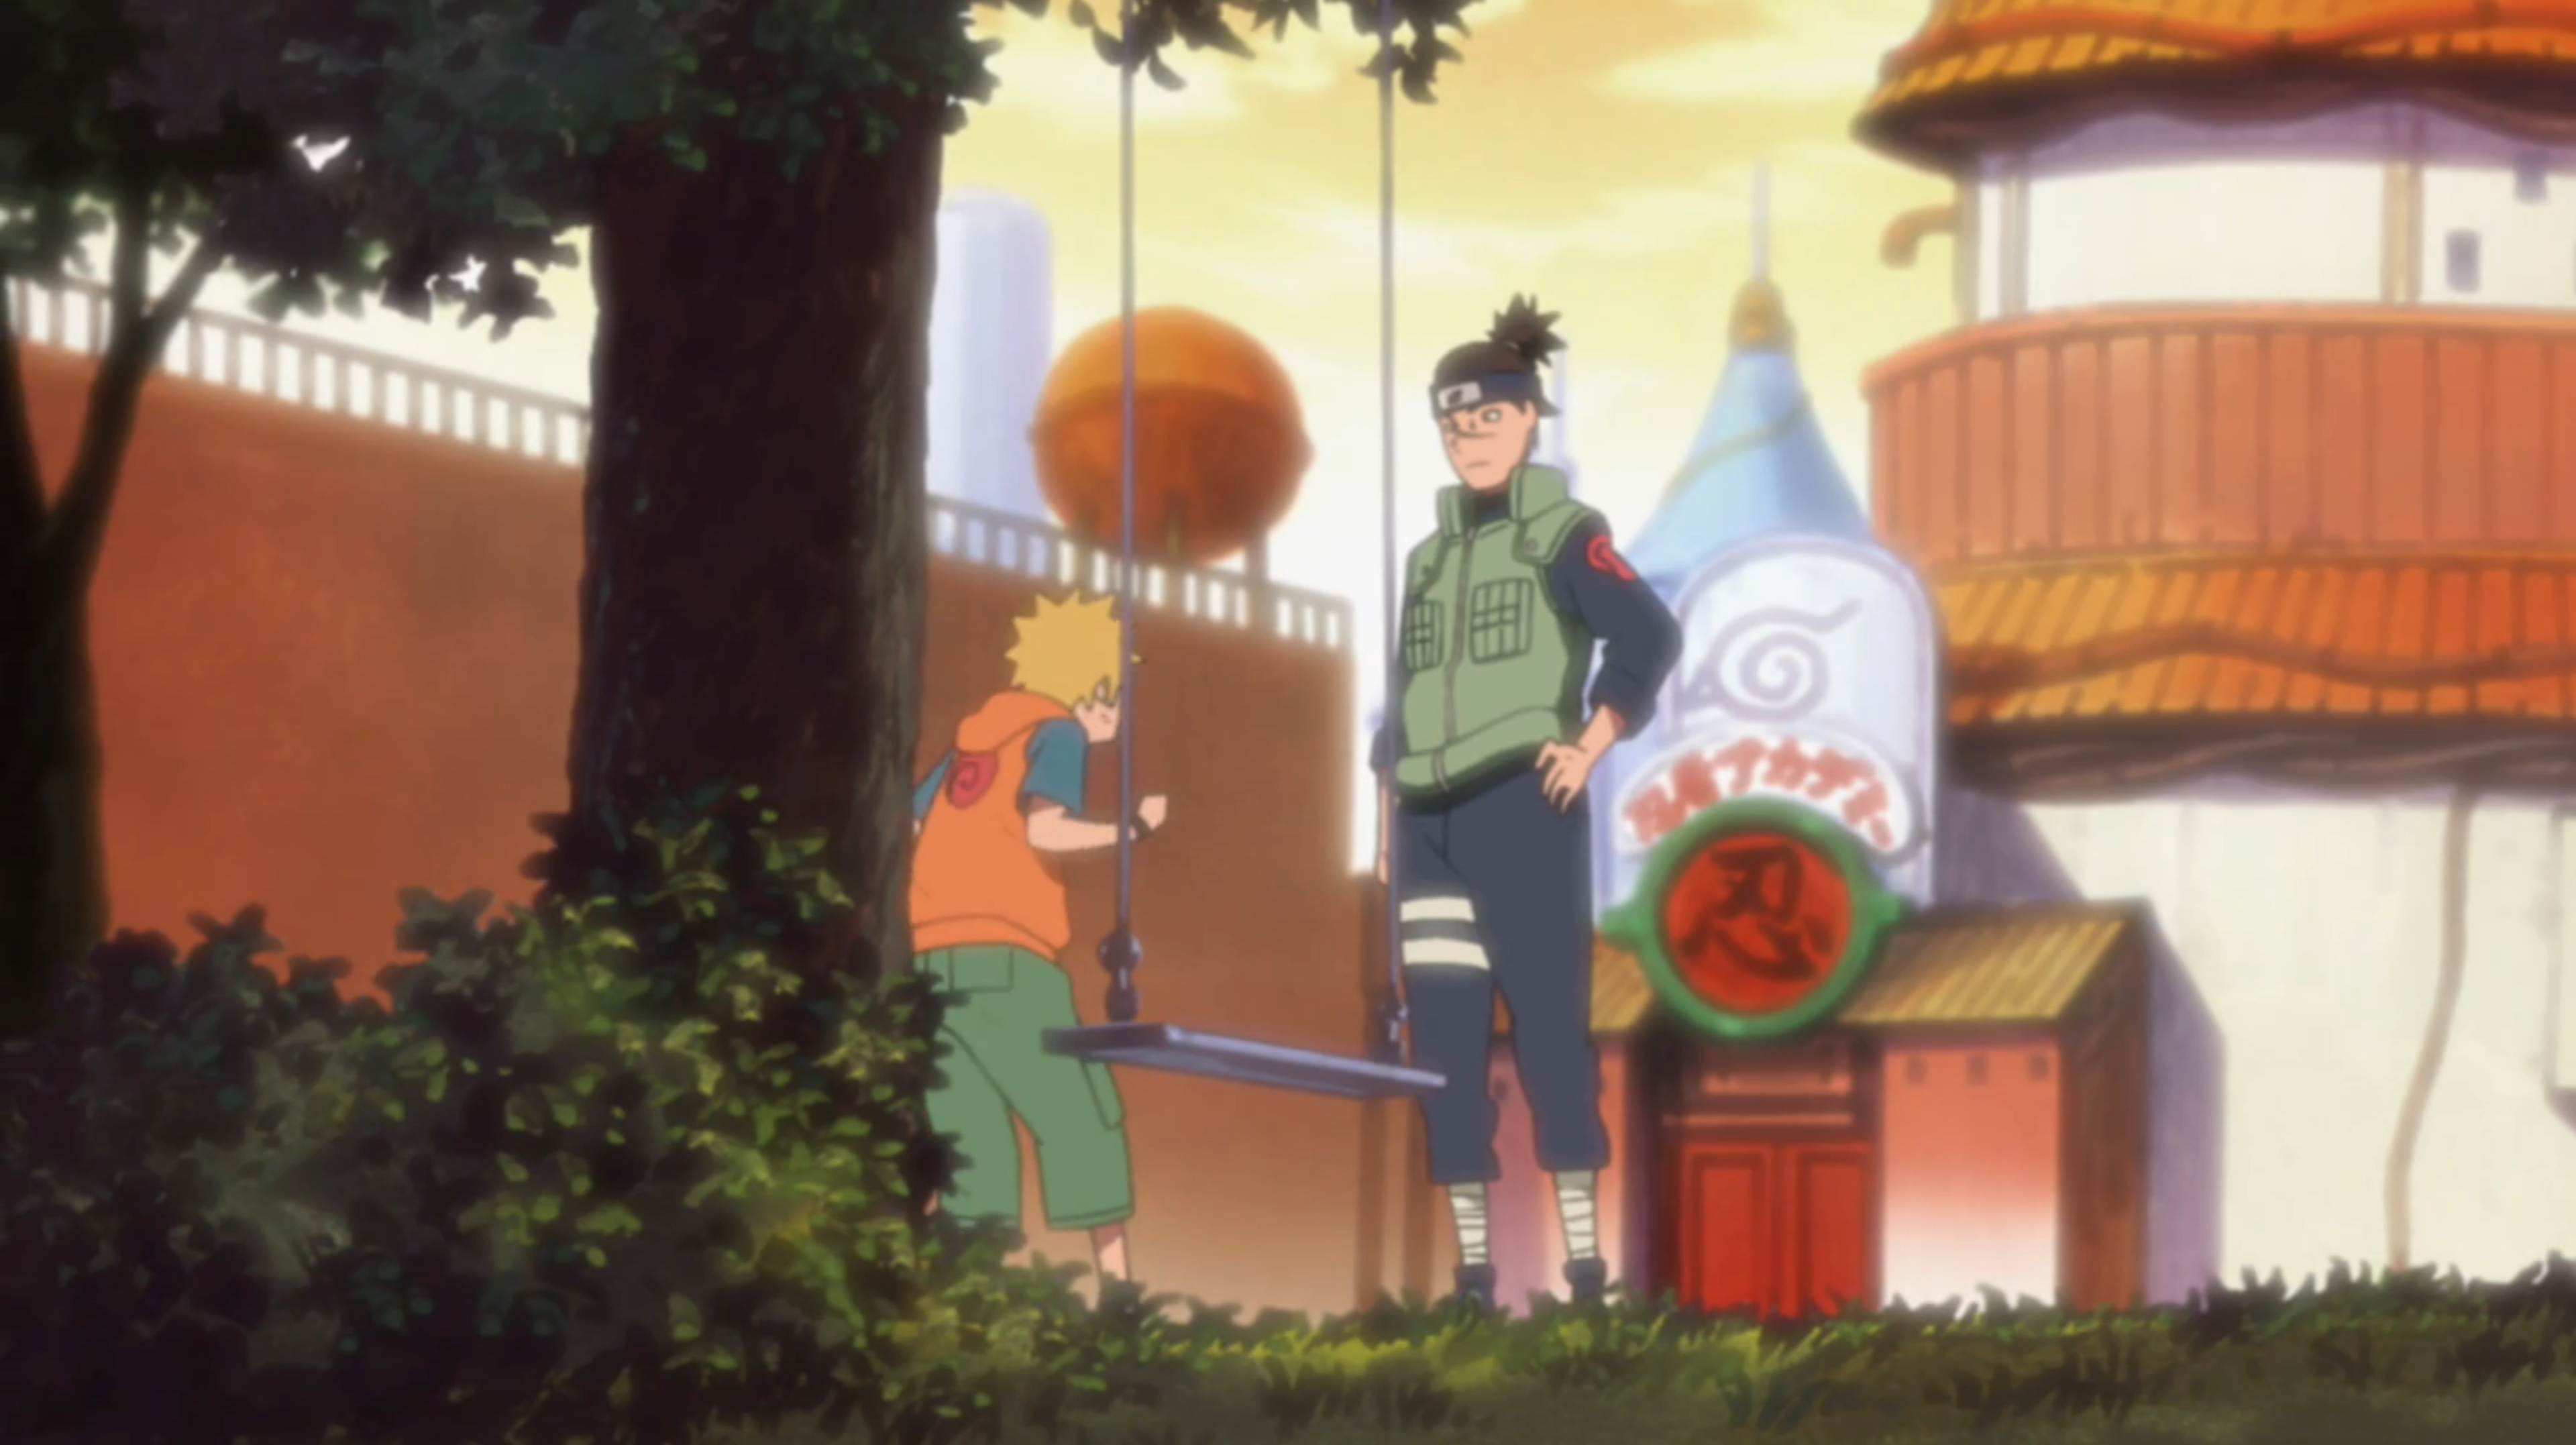 Do you think Iruka should be shown more in Naruto Shippuden as he